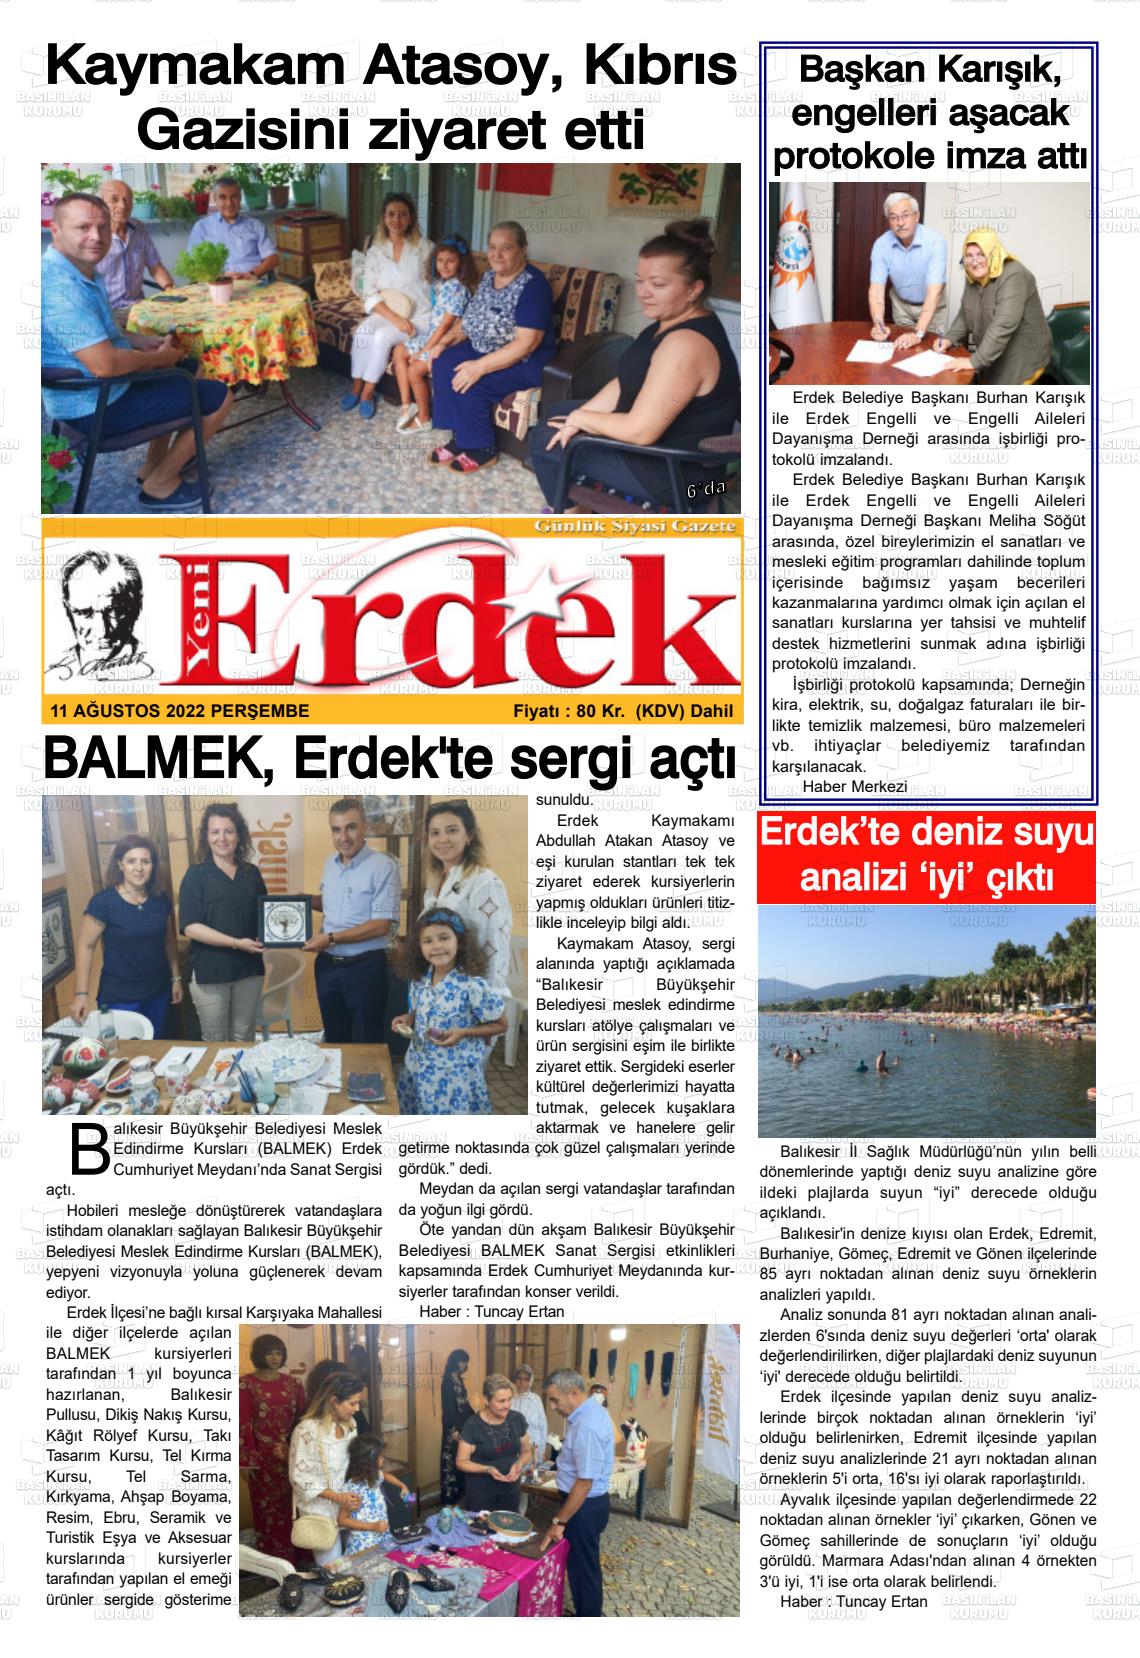 11 Ağustos 2022 Yeni Erdek Gazete Manşeti